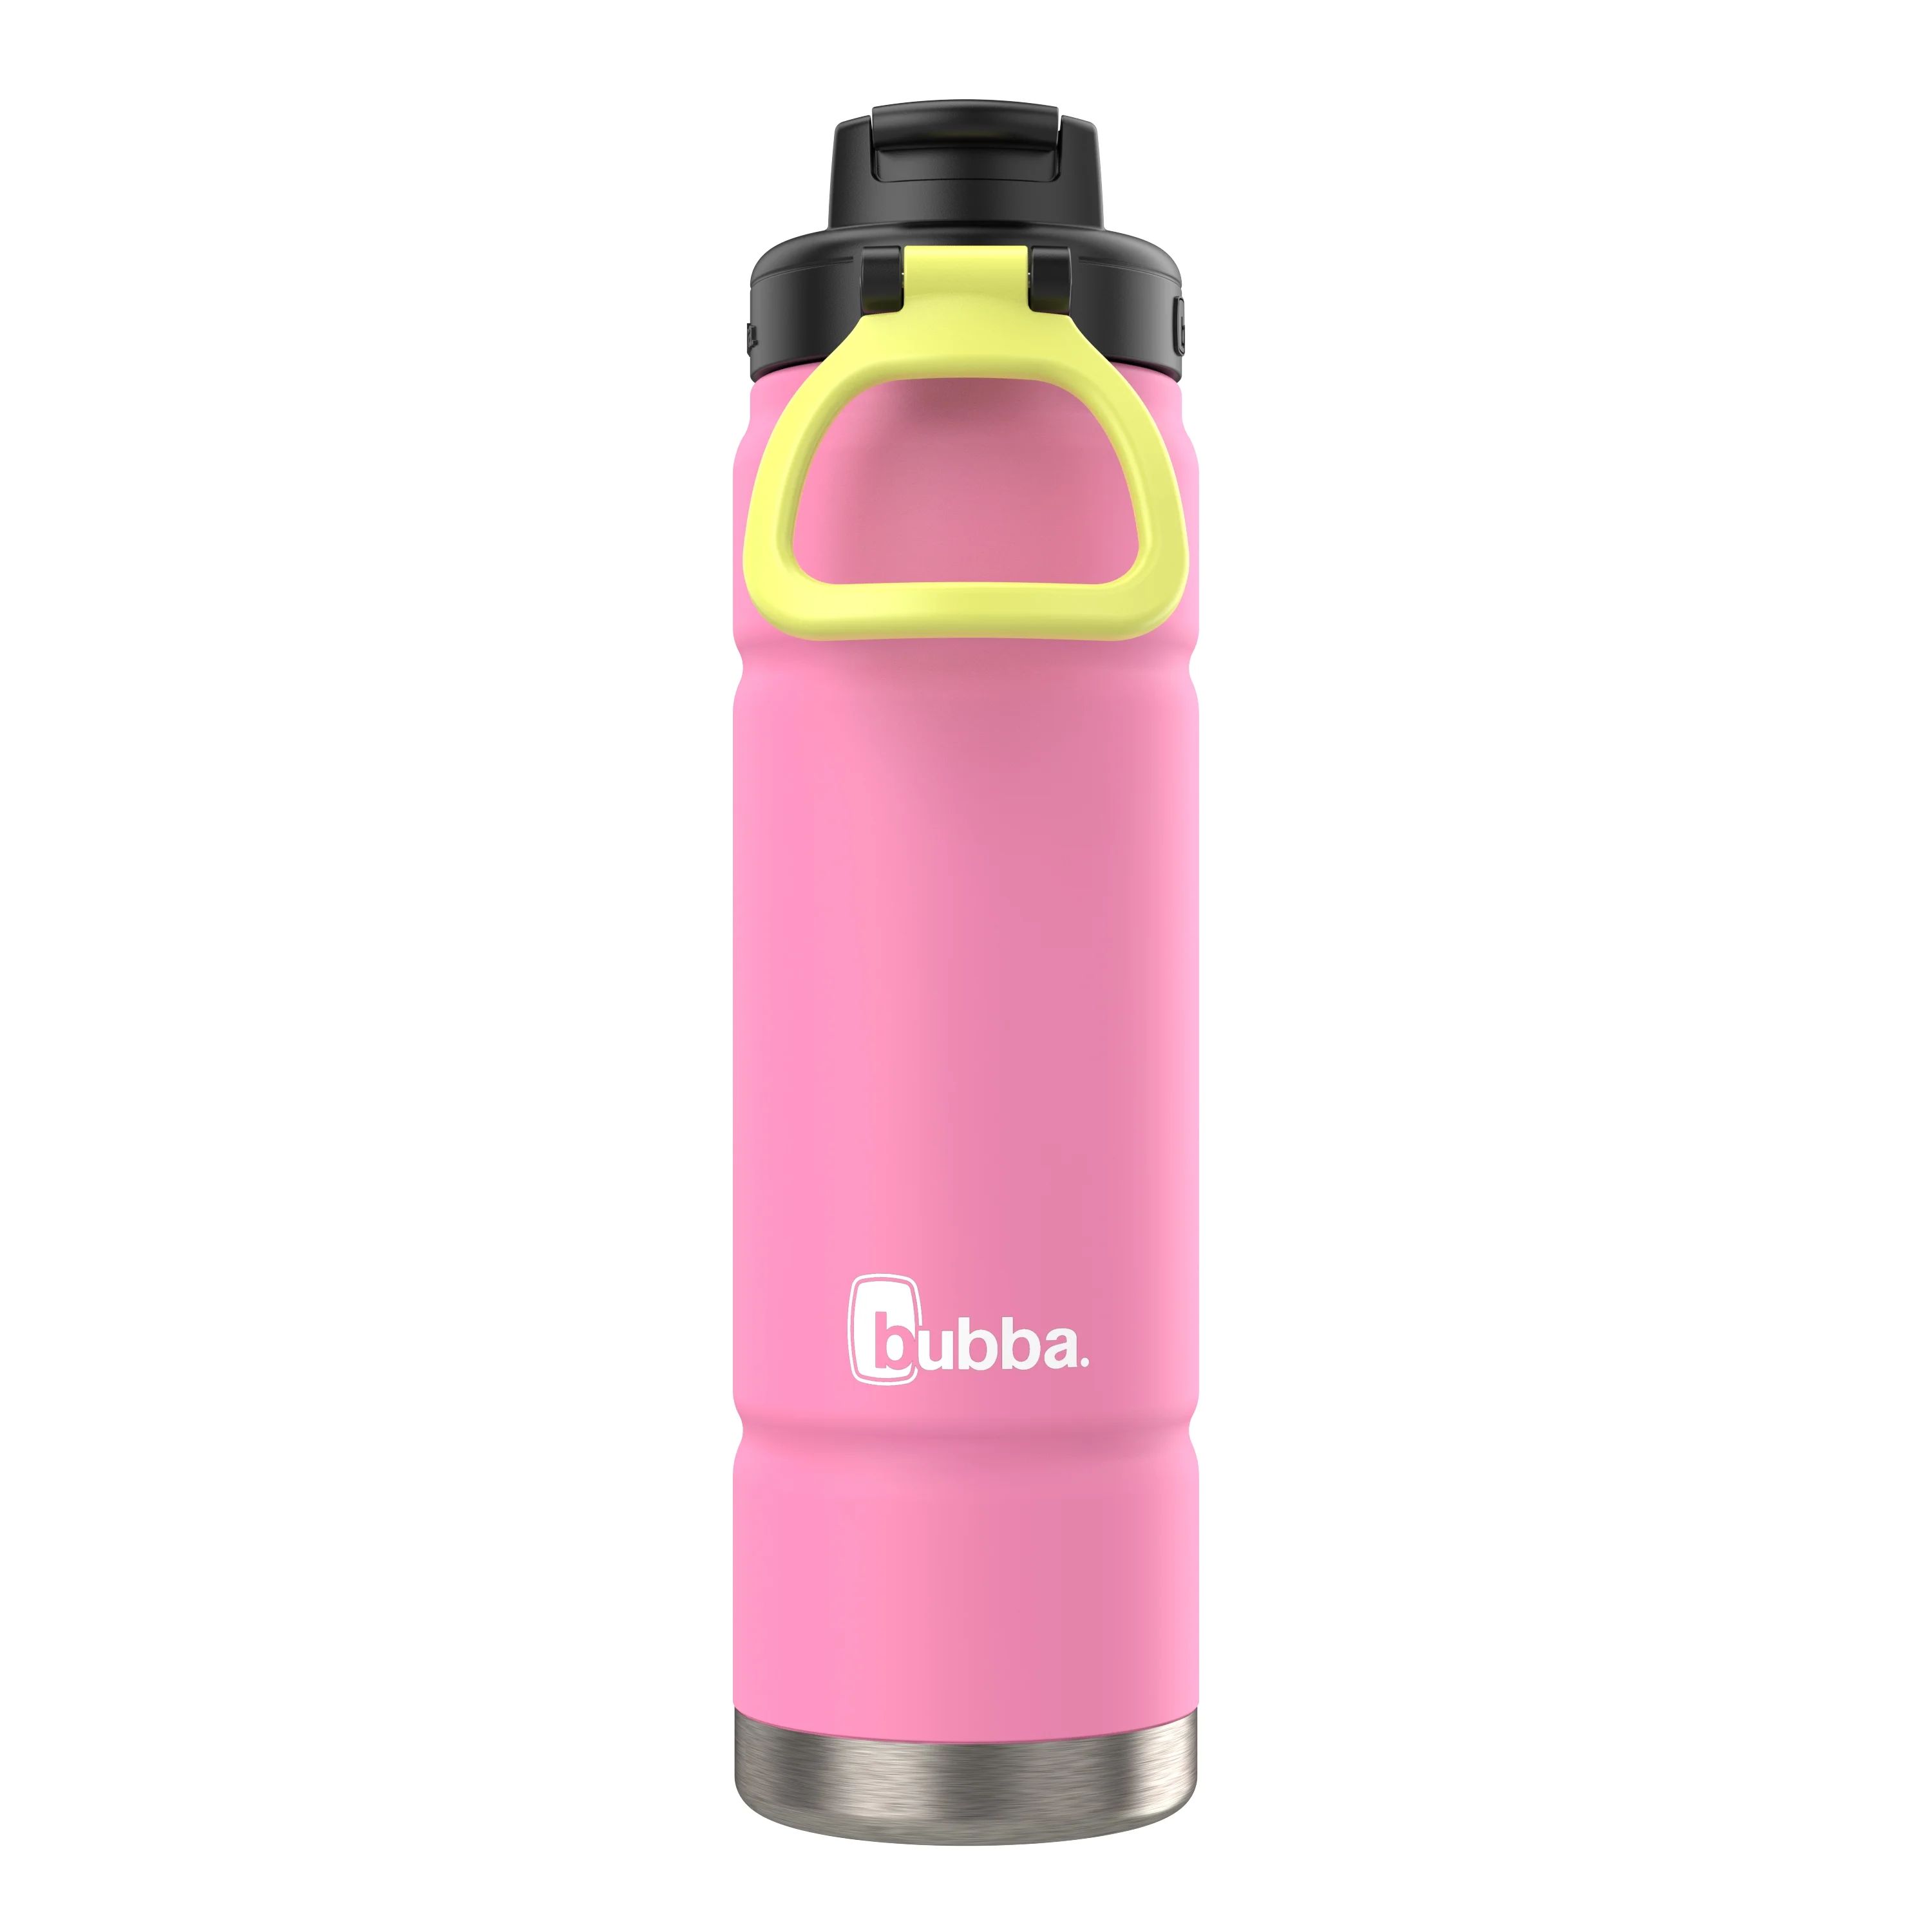 Bubba Trailblazer Stainless Steel Water Bottle, Straw Lid Rubberized Pink, 24 fl oz. | Walmart (US)